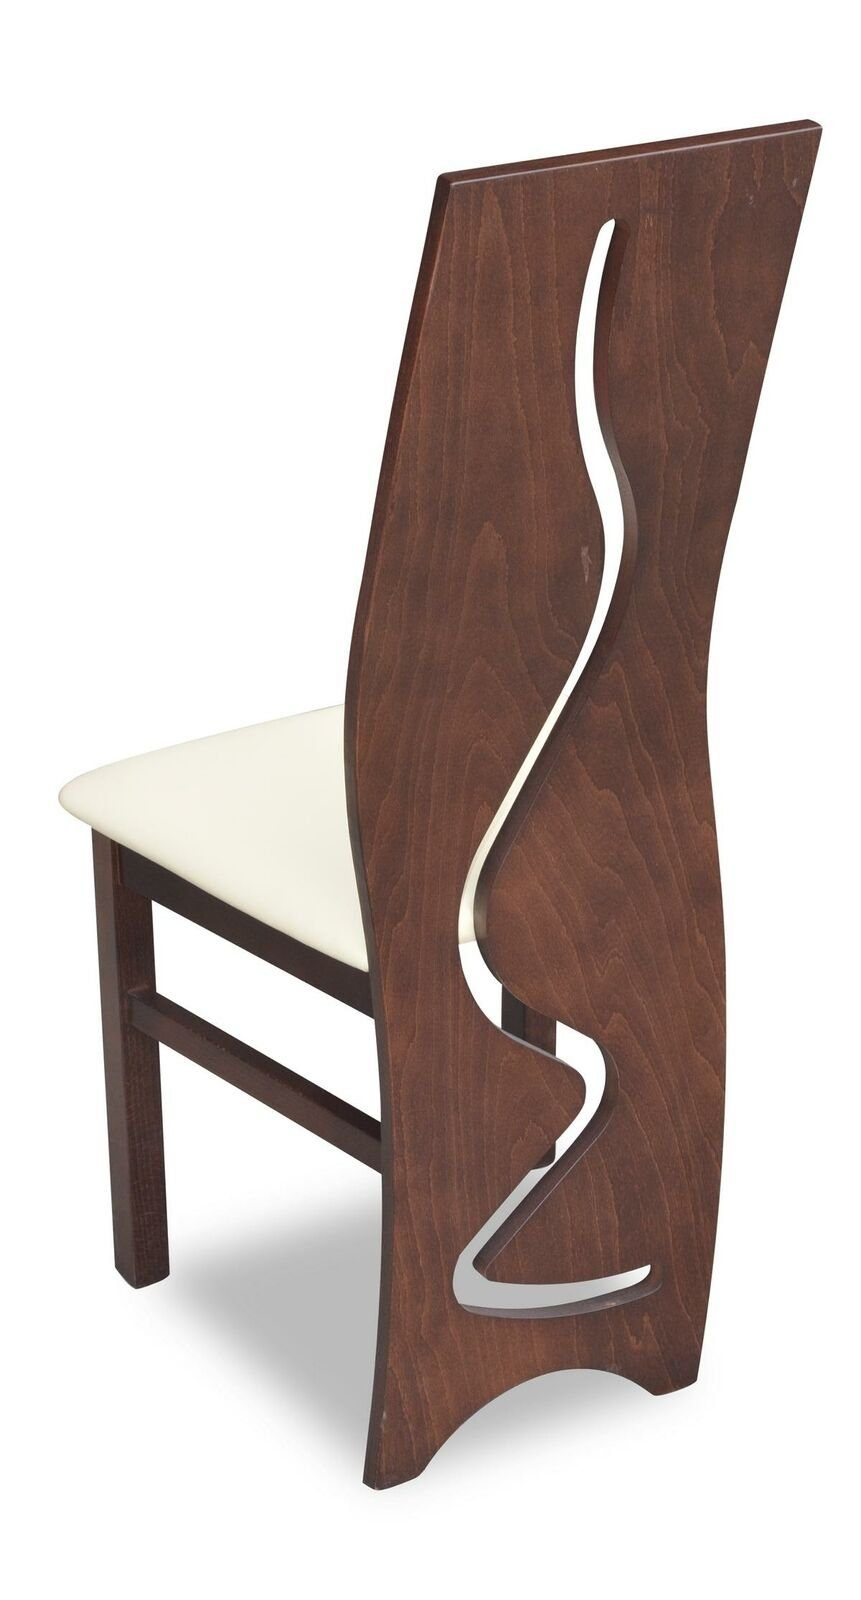 JVmoebel Stuhl, Garnitur Sessel Komplett Design Neu 8x Set Polster Lehn Stuhl Modernes Stühle